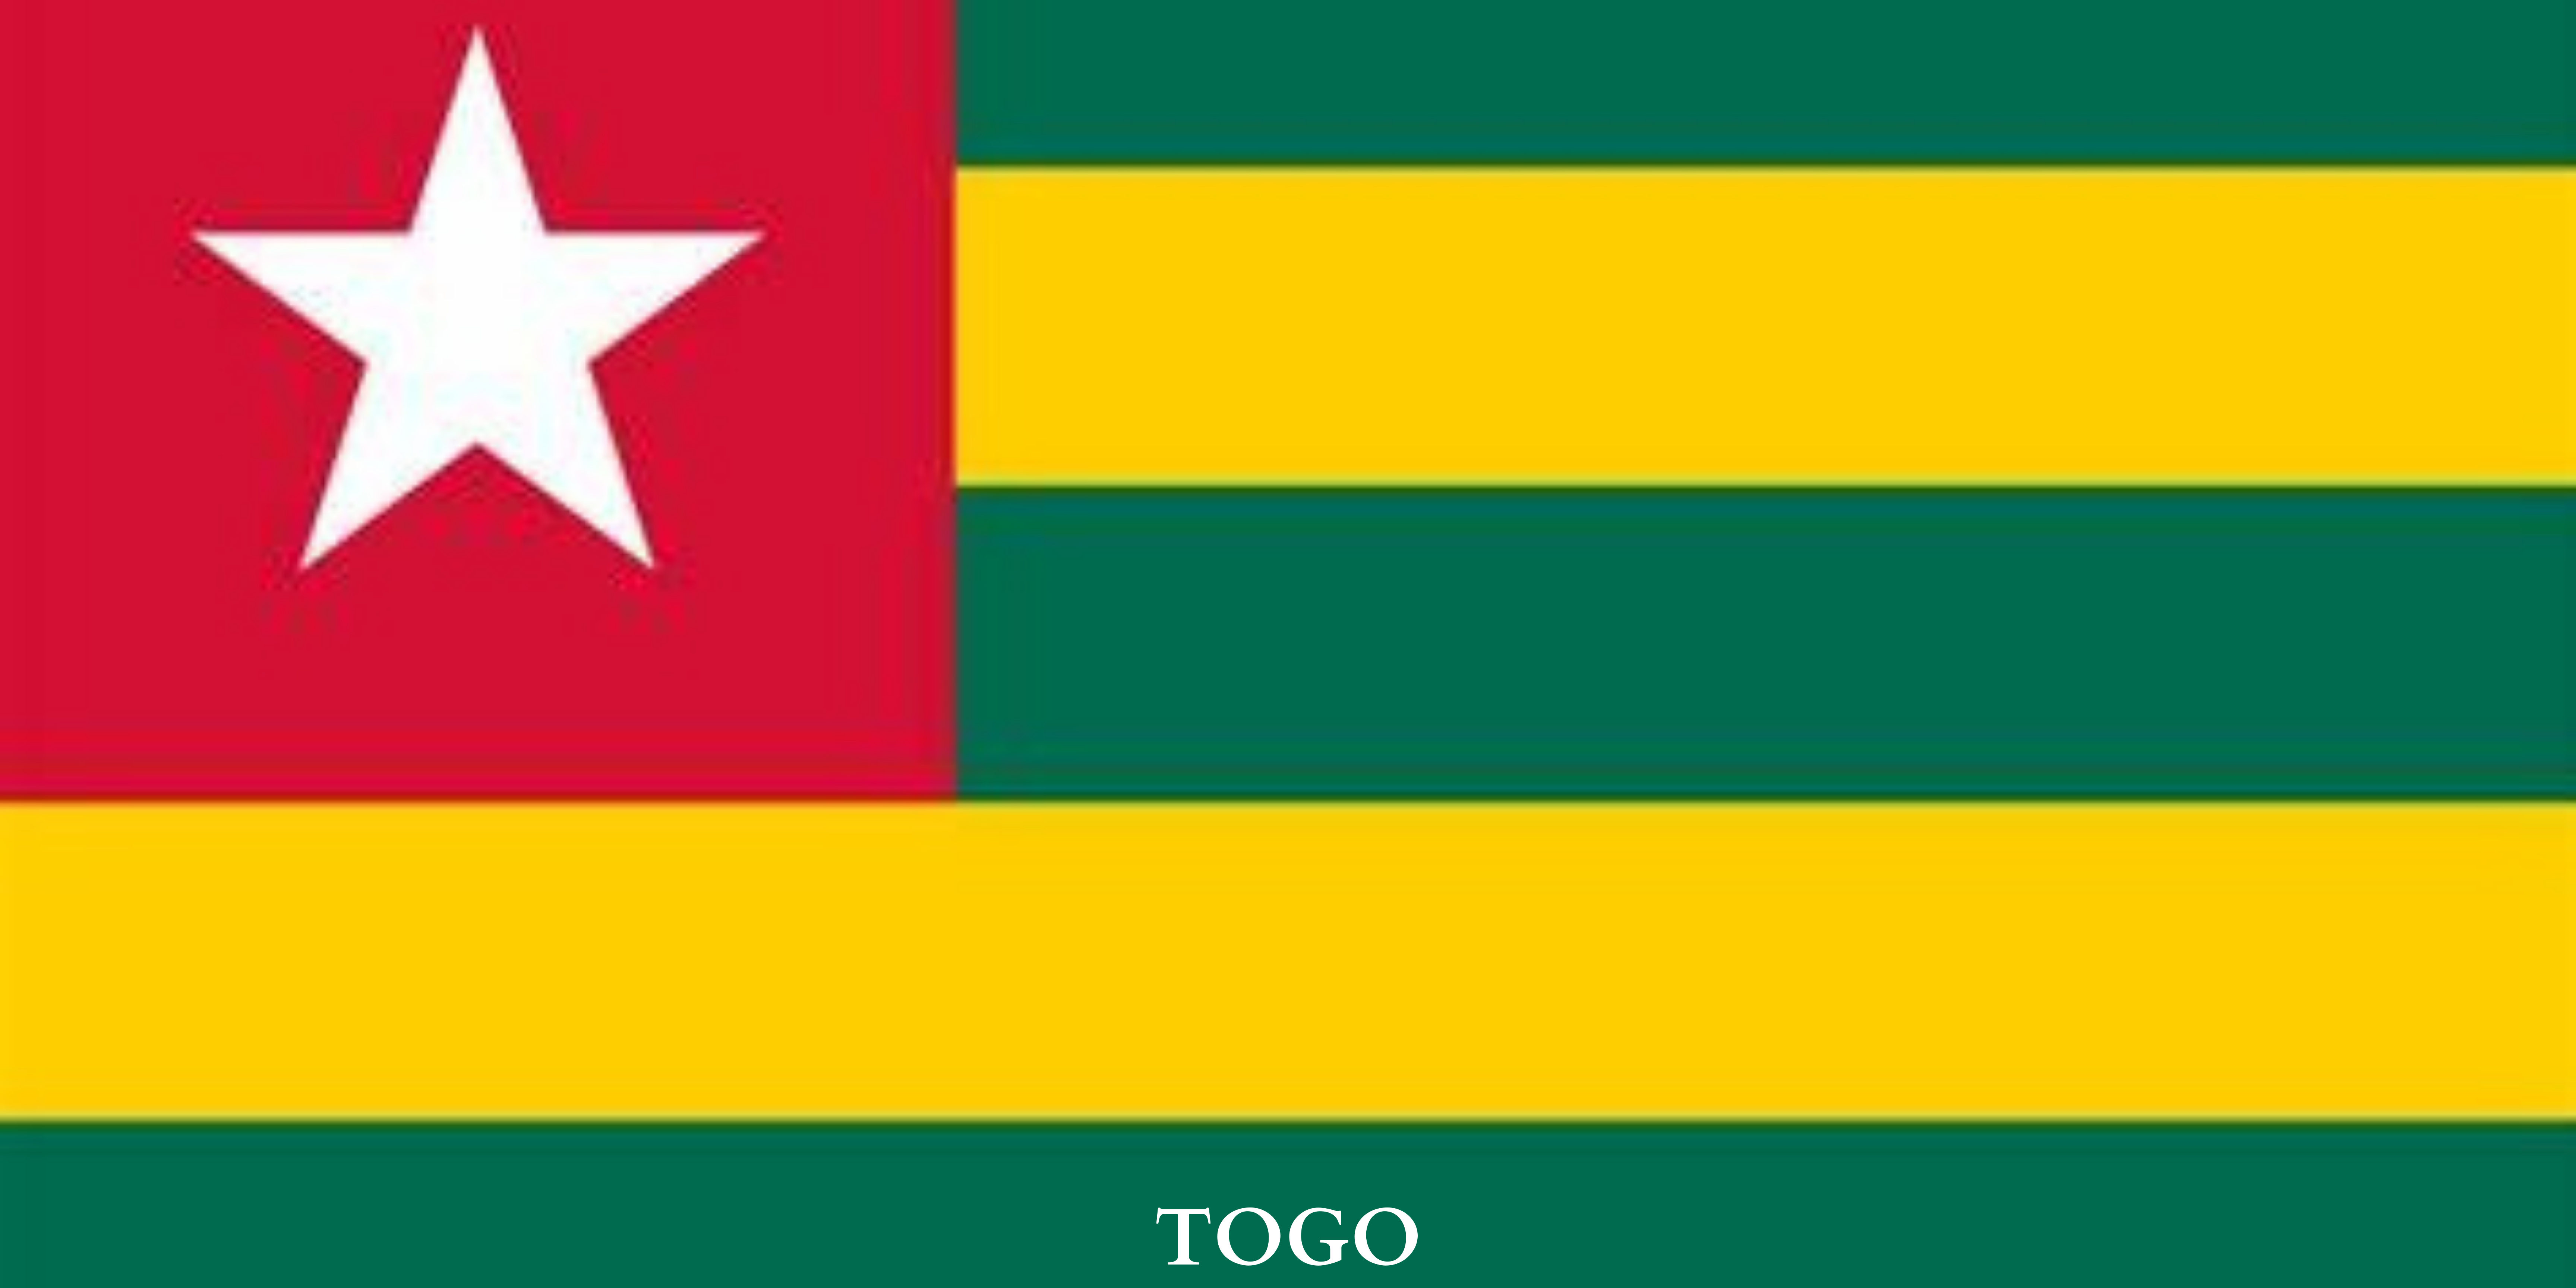 Togo's anthem lyrics were written by Alex CASIMIR-DOSSEH